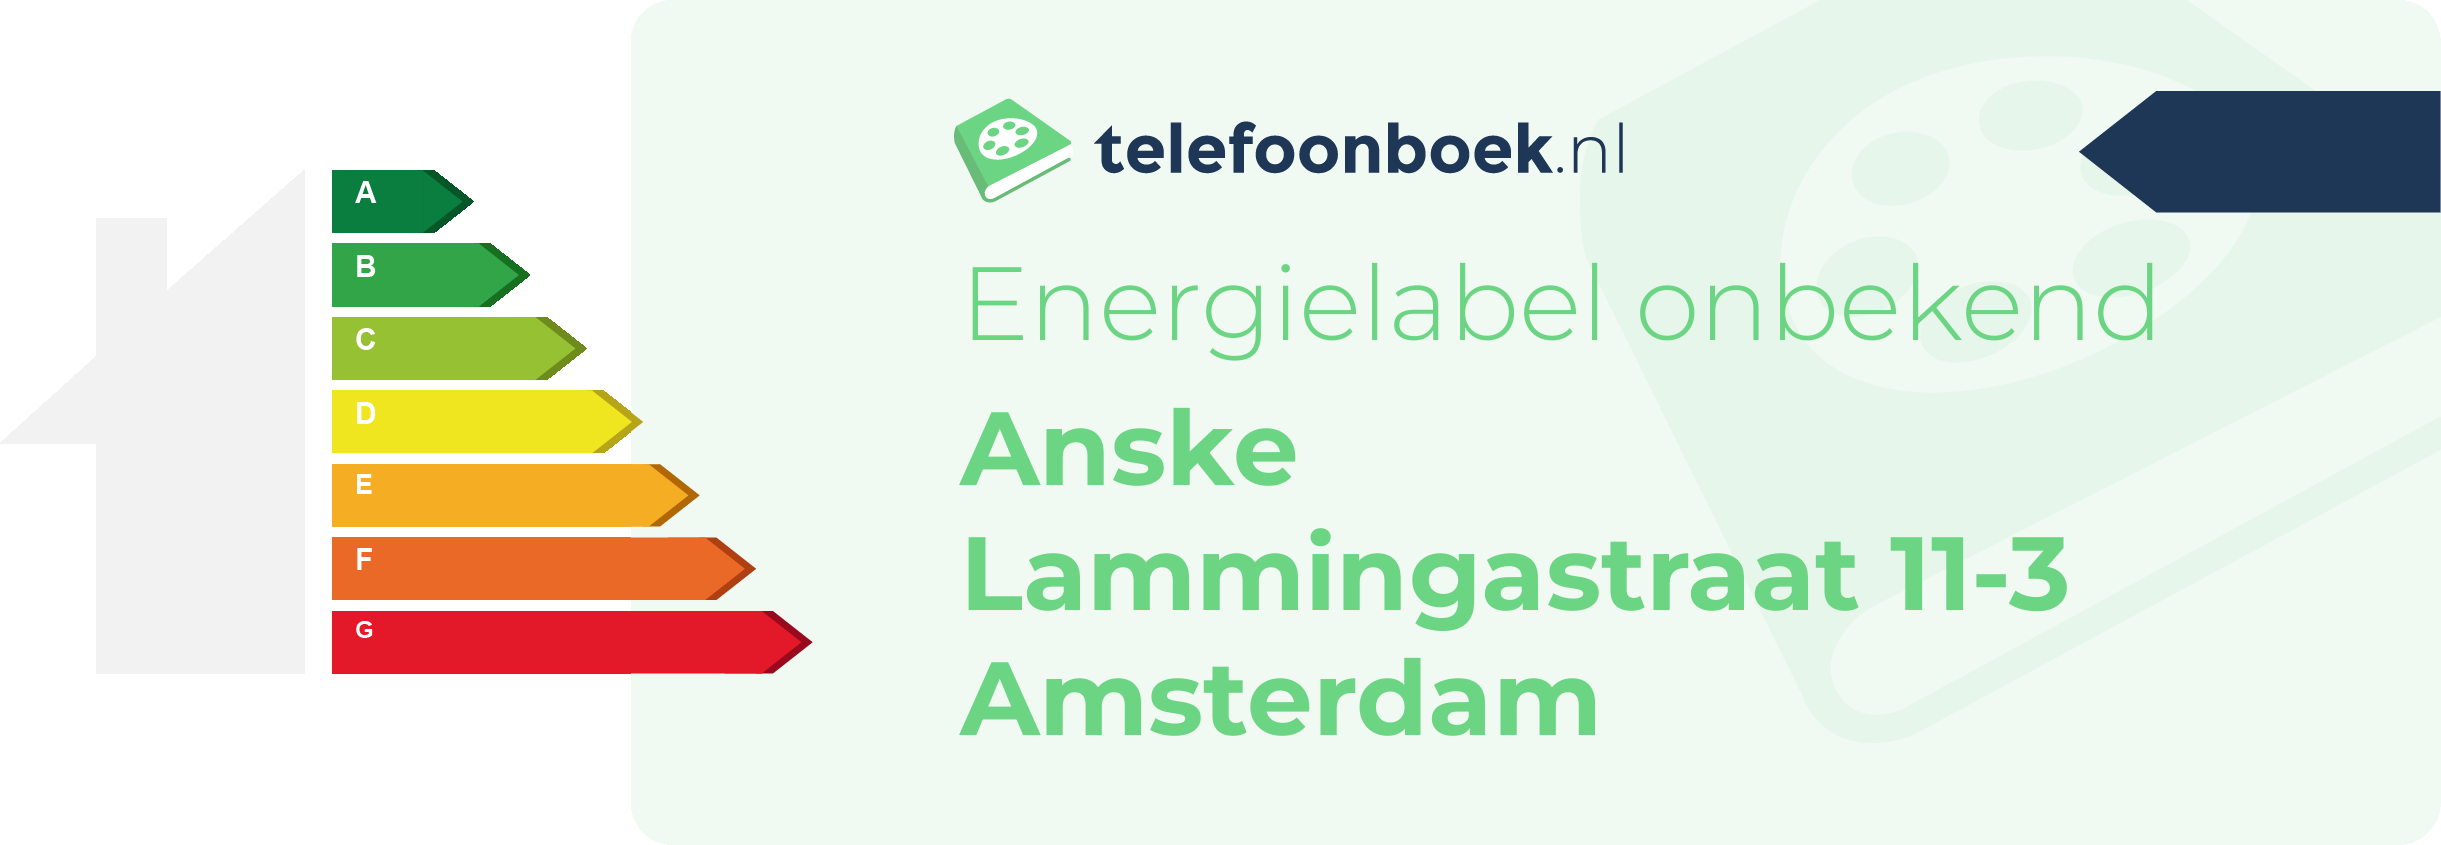 Energielabel Anske Lammingastraat 11-3 Amsterdam